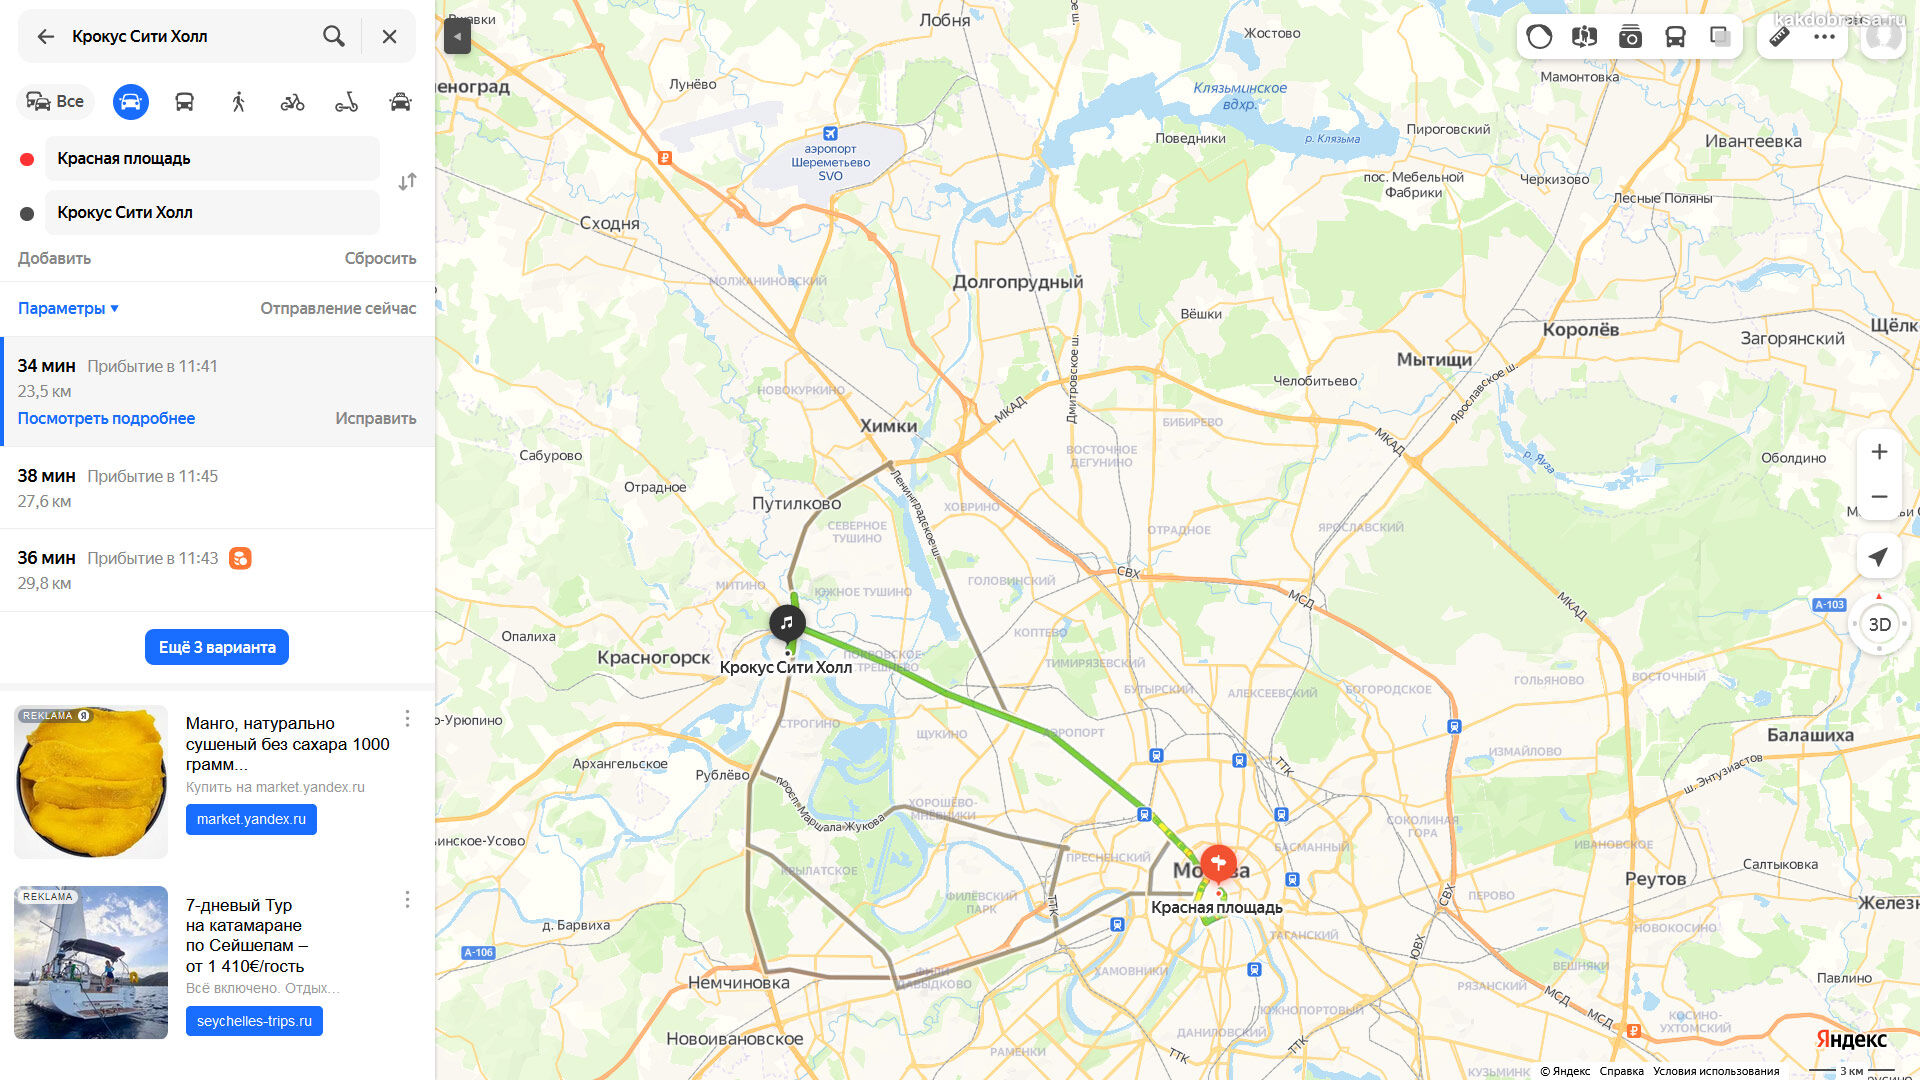 Крокус сити сколько км от москвы. Крокус на карте Москвы. Крокус Сити на карте Москвы. Крокус Сити Холл на карте Москвы. Крокус Сити Холл станция метро ближайшее.